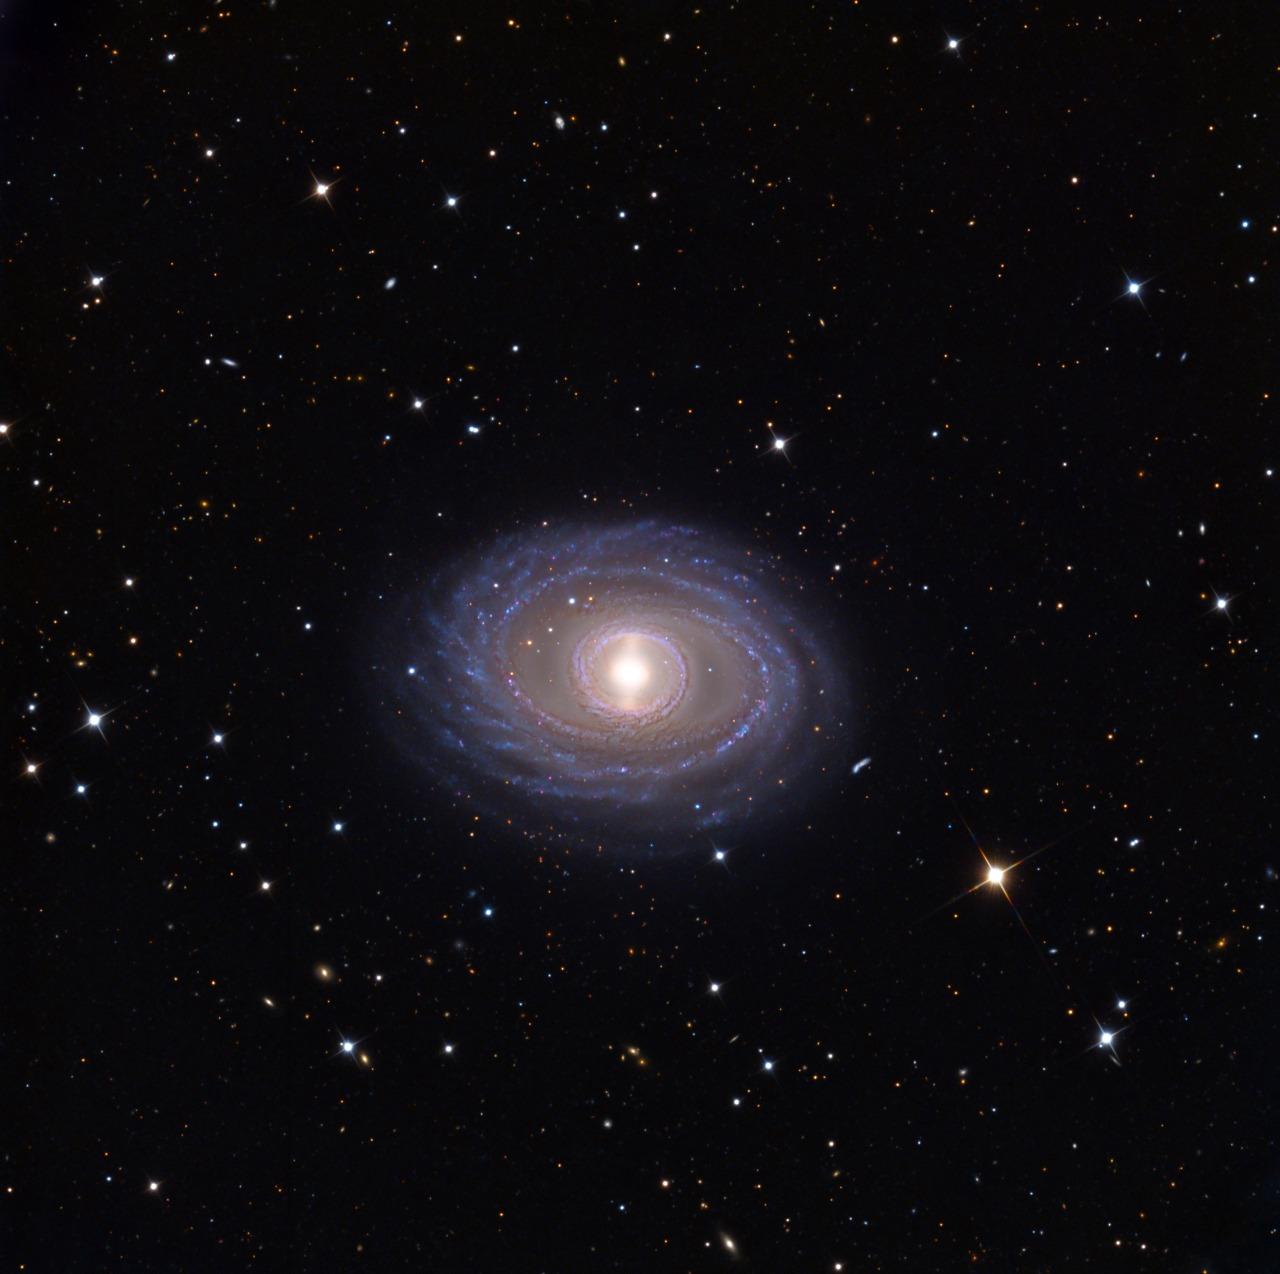 Галактика NGC 1398 - спиральная галактика с плотным внутренним кольцом, окружающим яркий центр ядра